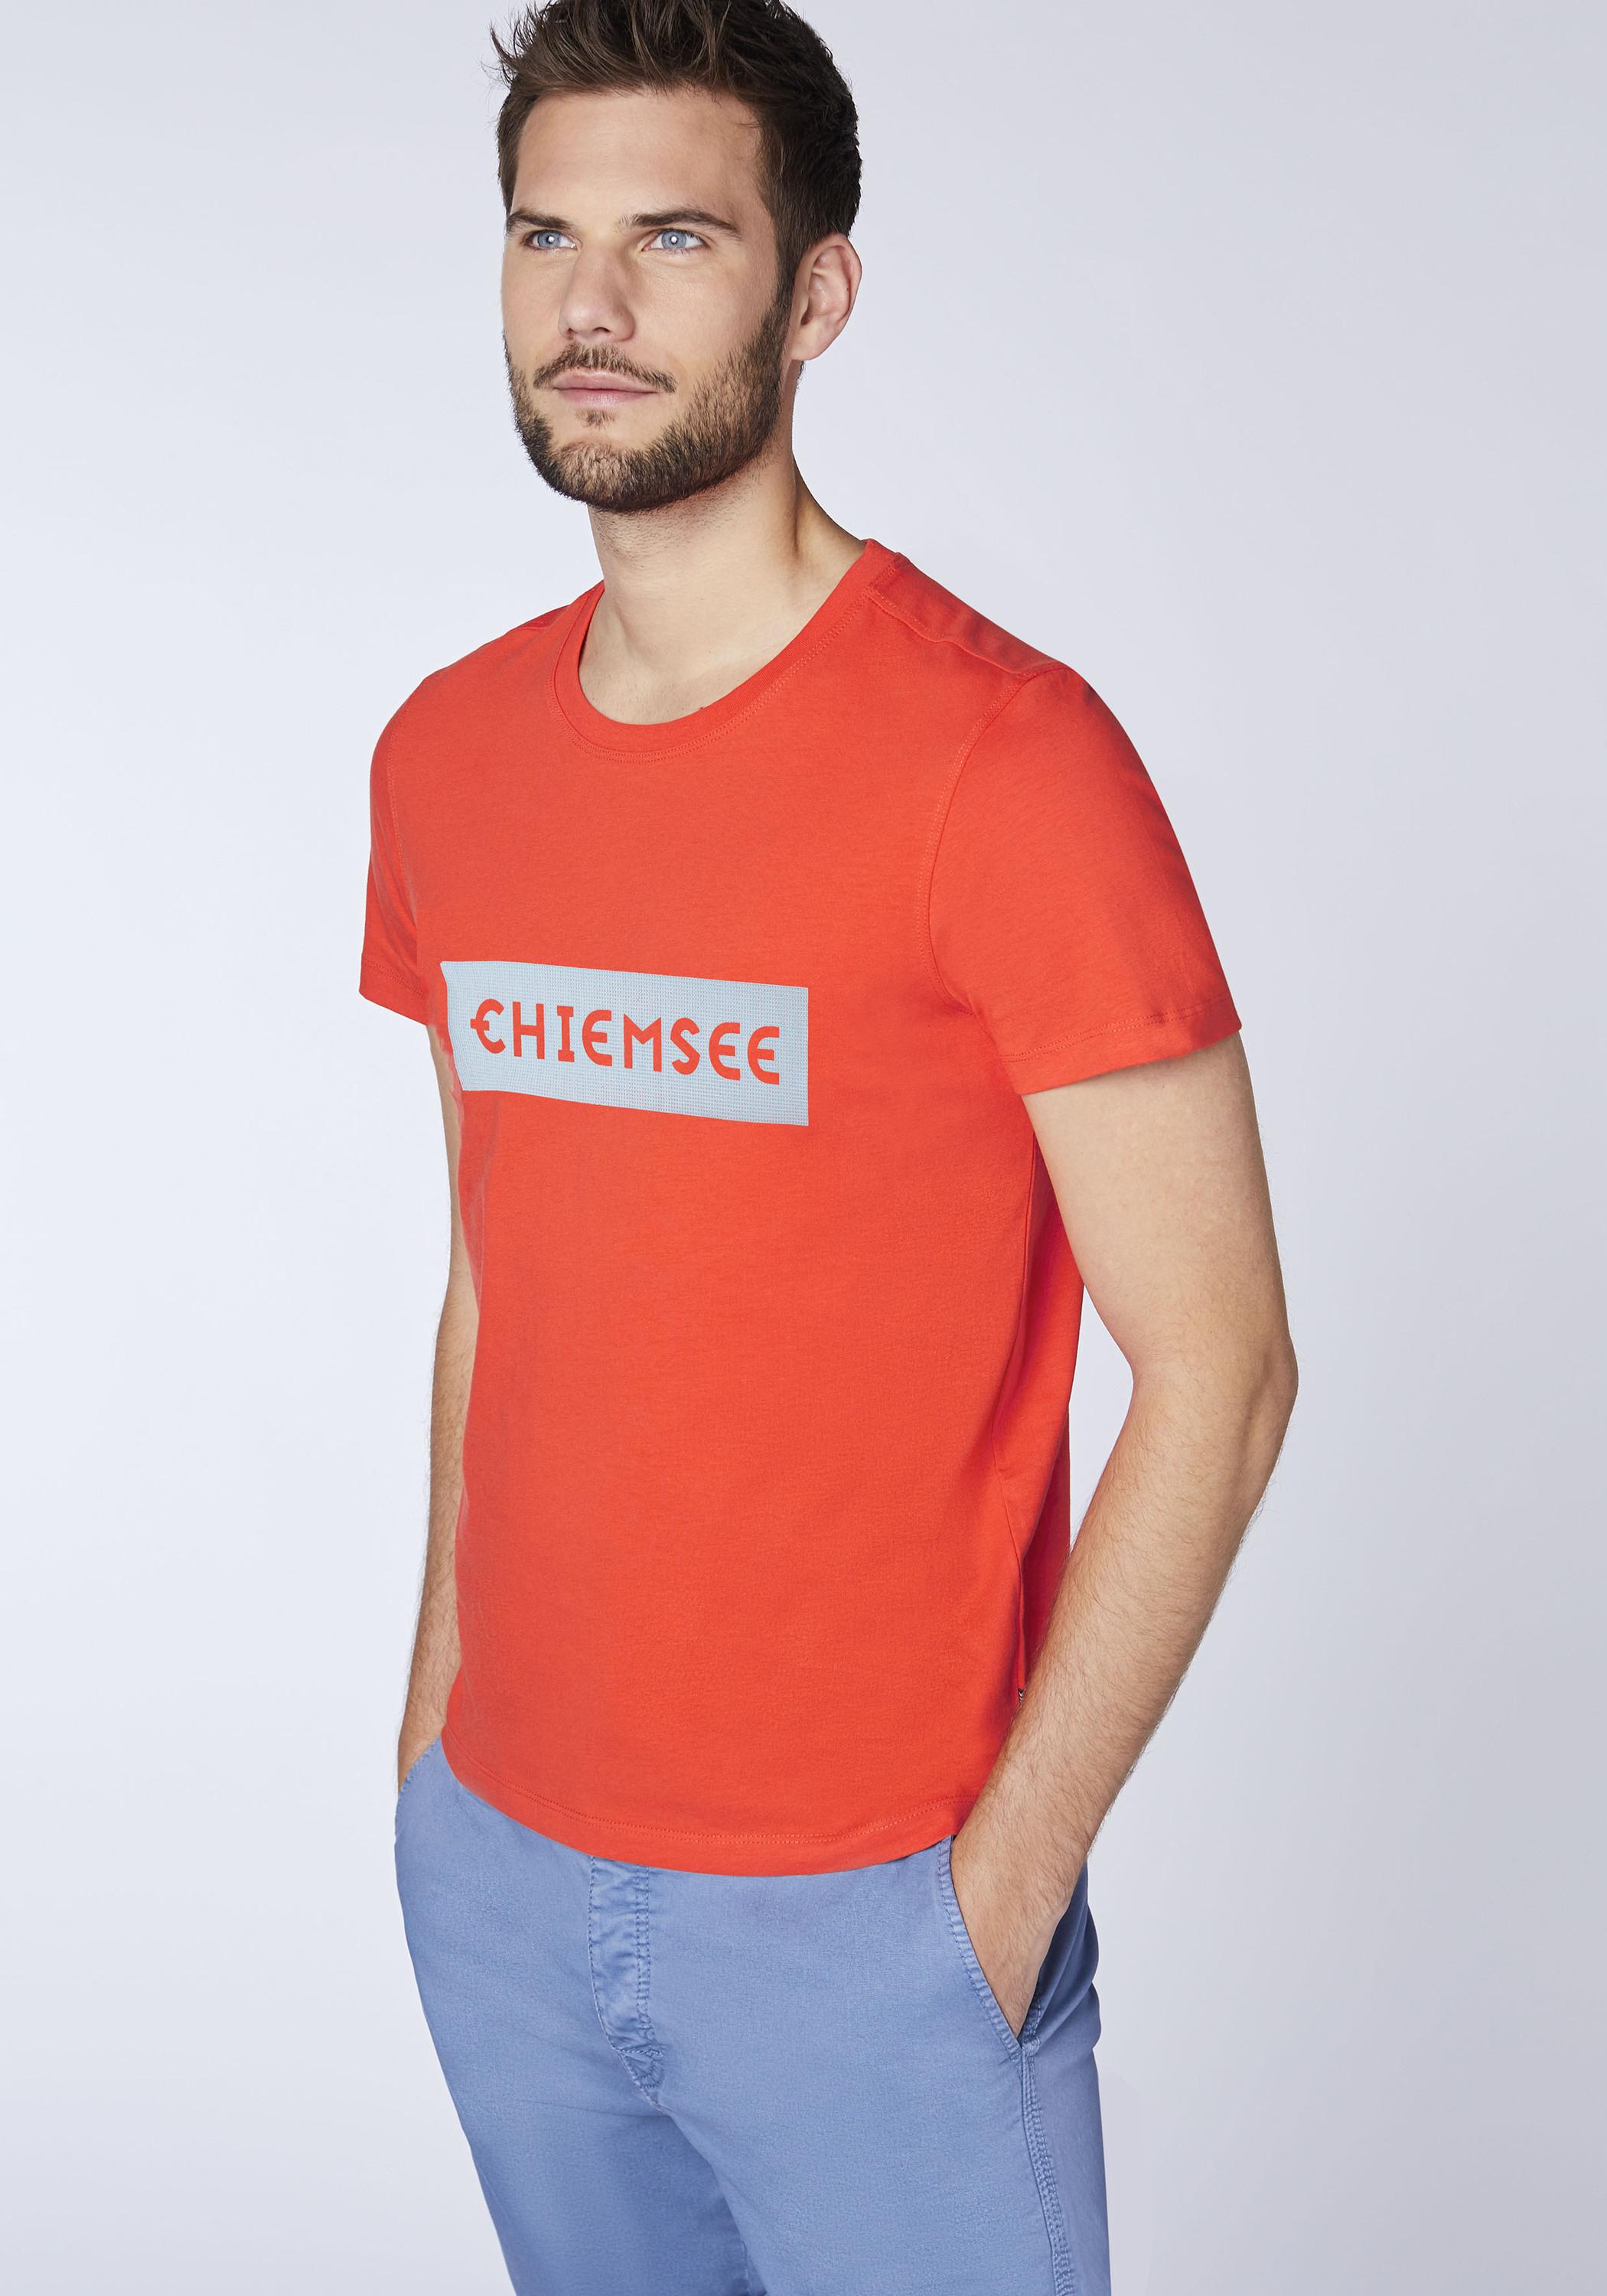 Chiemsee T-Shirt T-Shirt Herren SportScheck im kaufen Online Tomato von Chery Shop